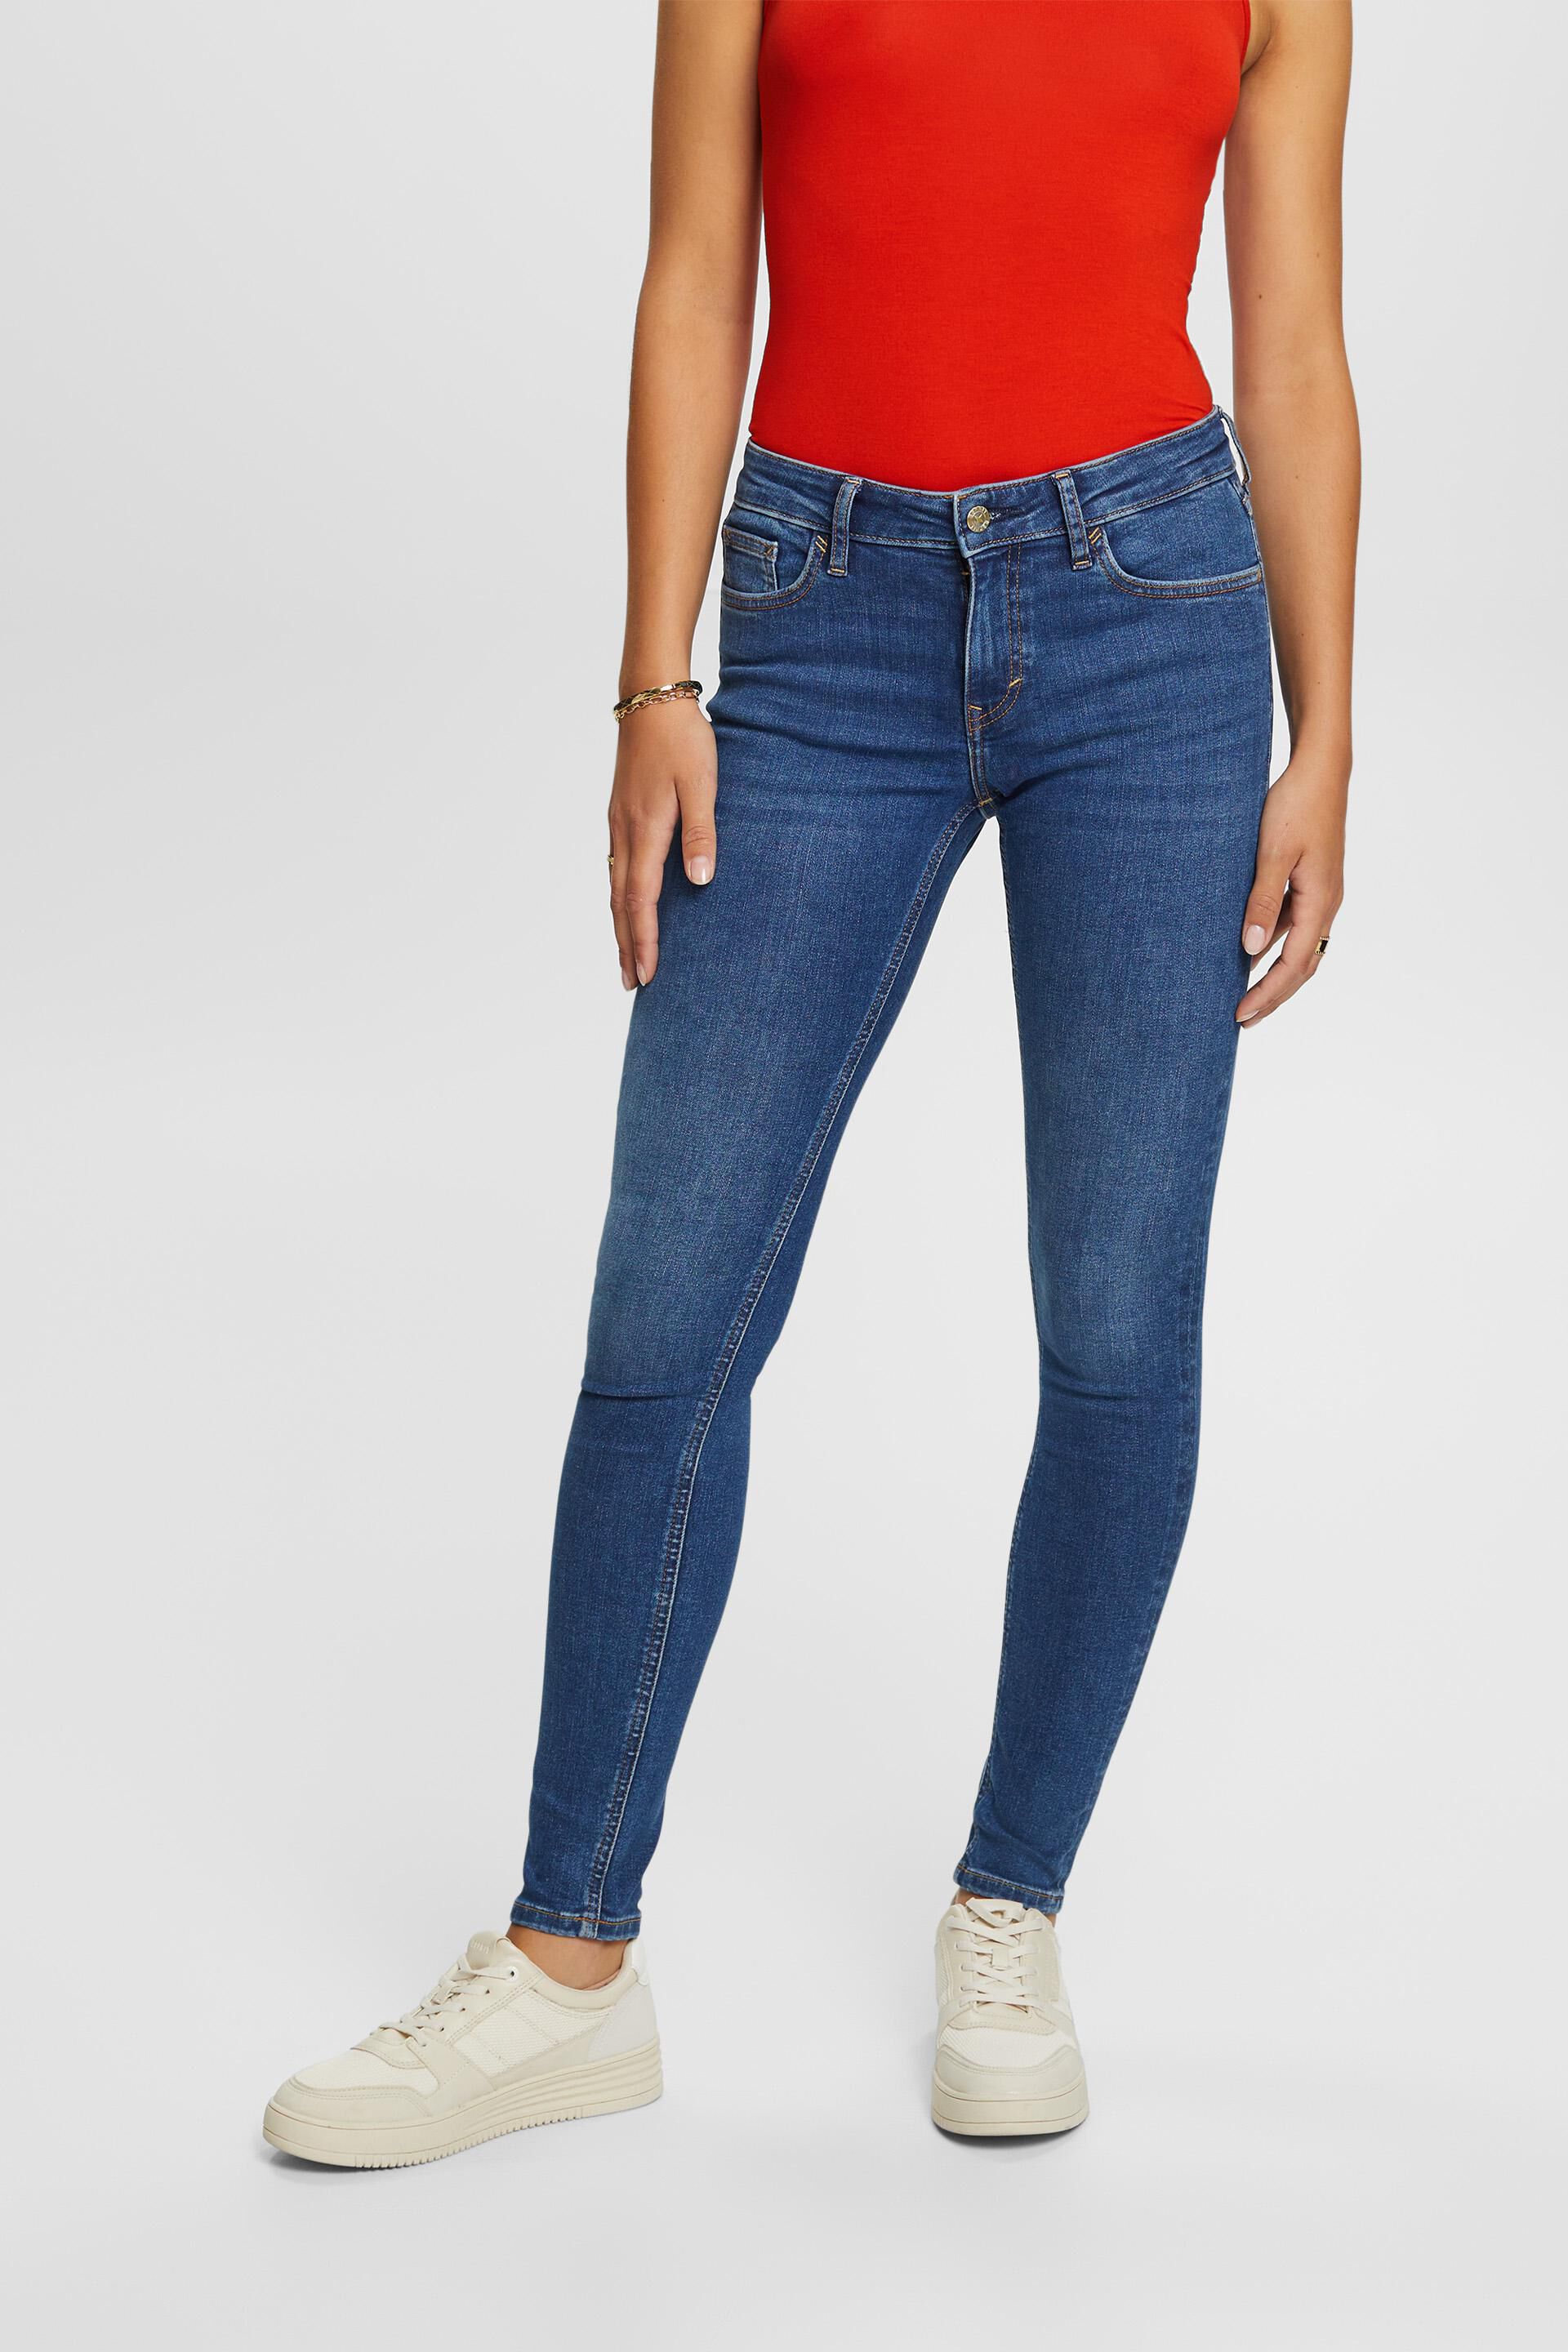 Esprit Damen Skinny-Jeans mit mittelhohem Bund